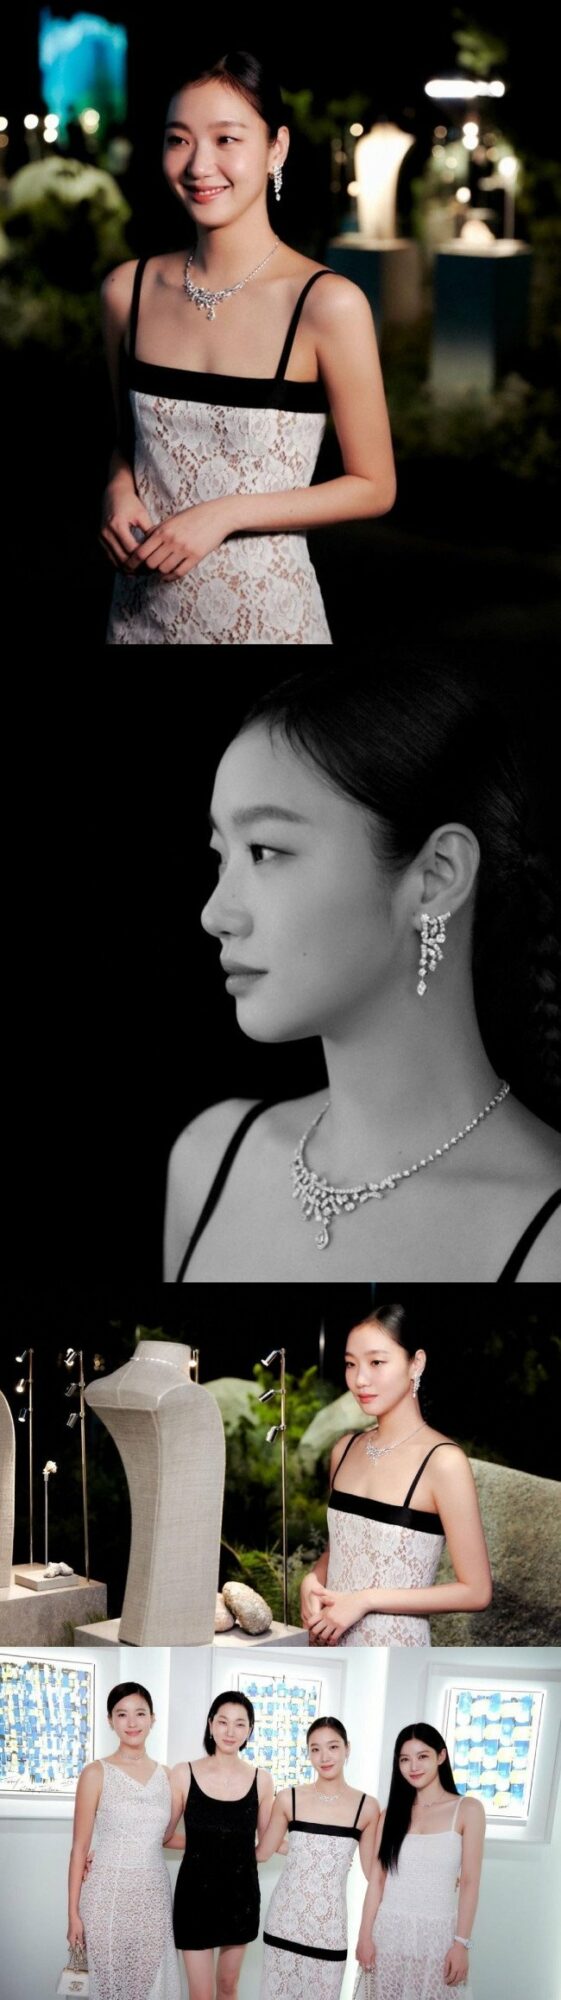 Ким Го Ын поделилась фото в потрясающем образе с мероприятия "CHANEL High Jewelry"